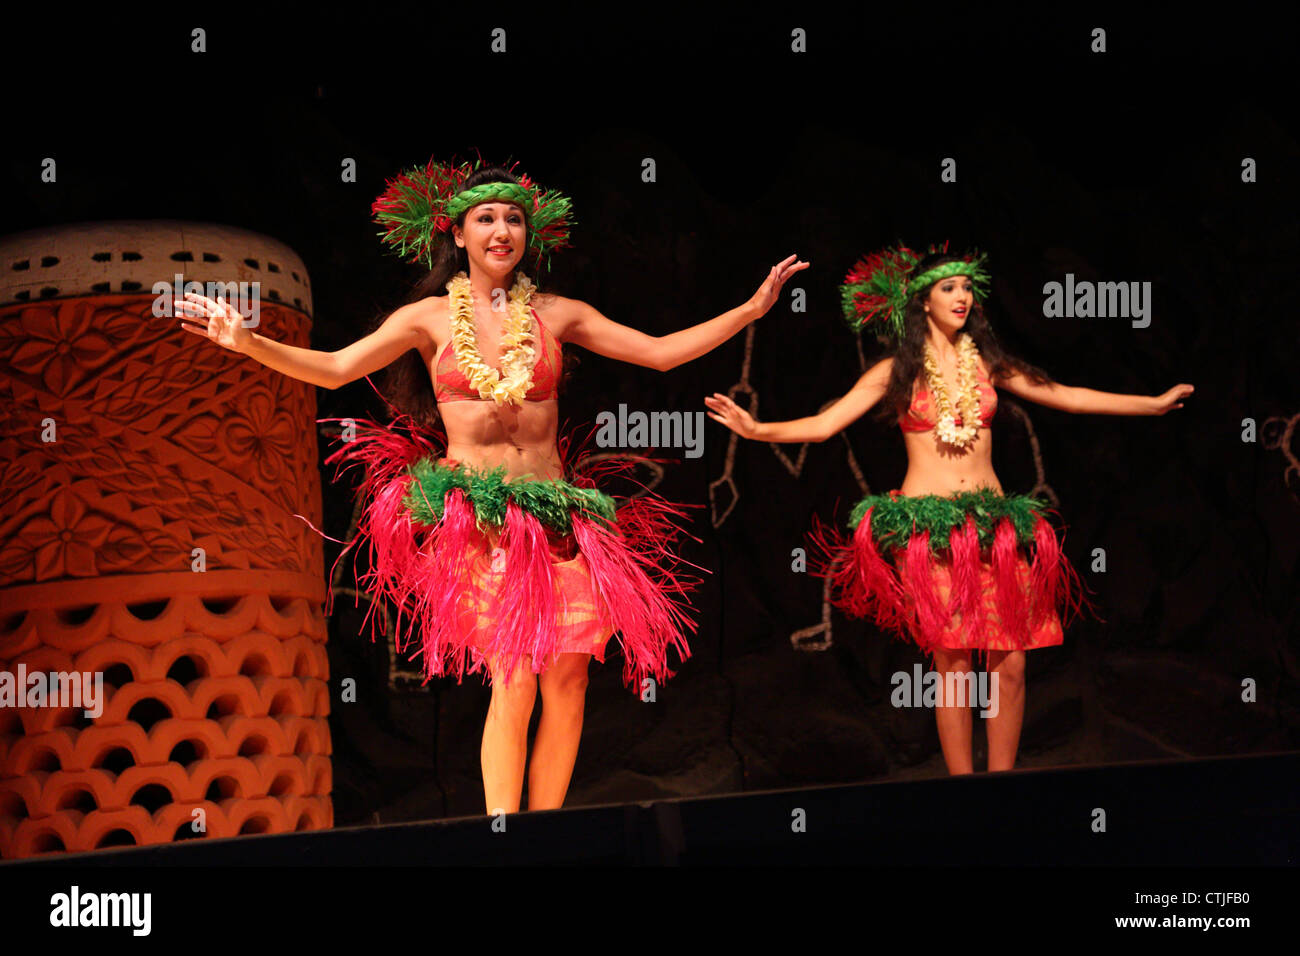 À danseurs hula luau hawaïen Banque D'Images